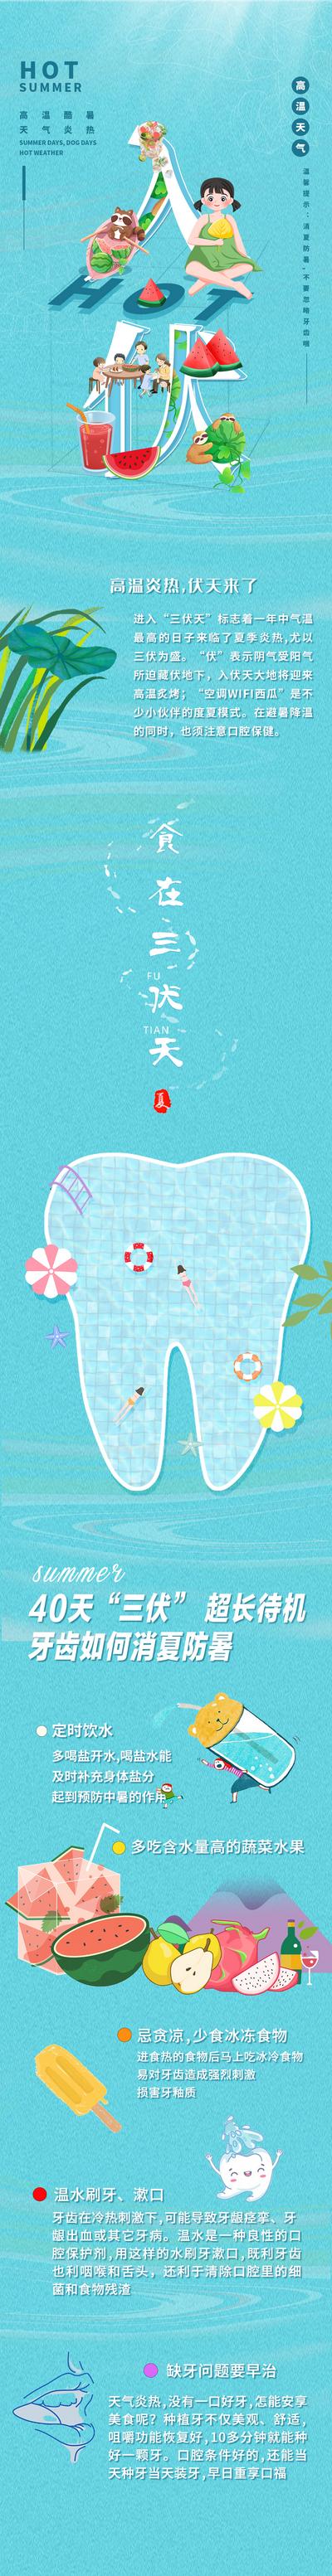 南门网 专题设计 牙齿 健康 三伏天 入伏 牙齿敏感 科普 防暑 卡通